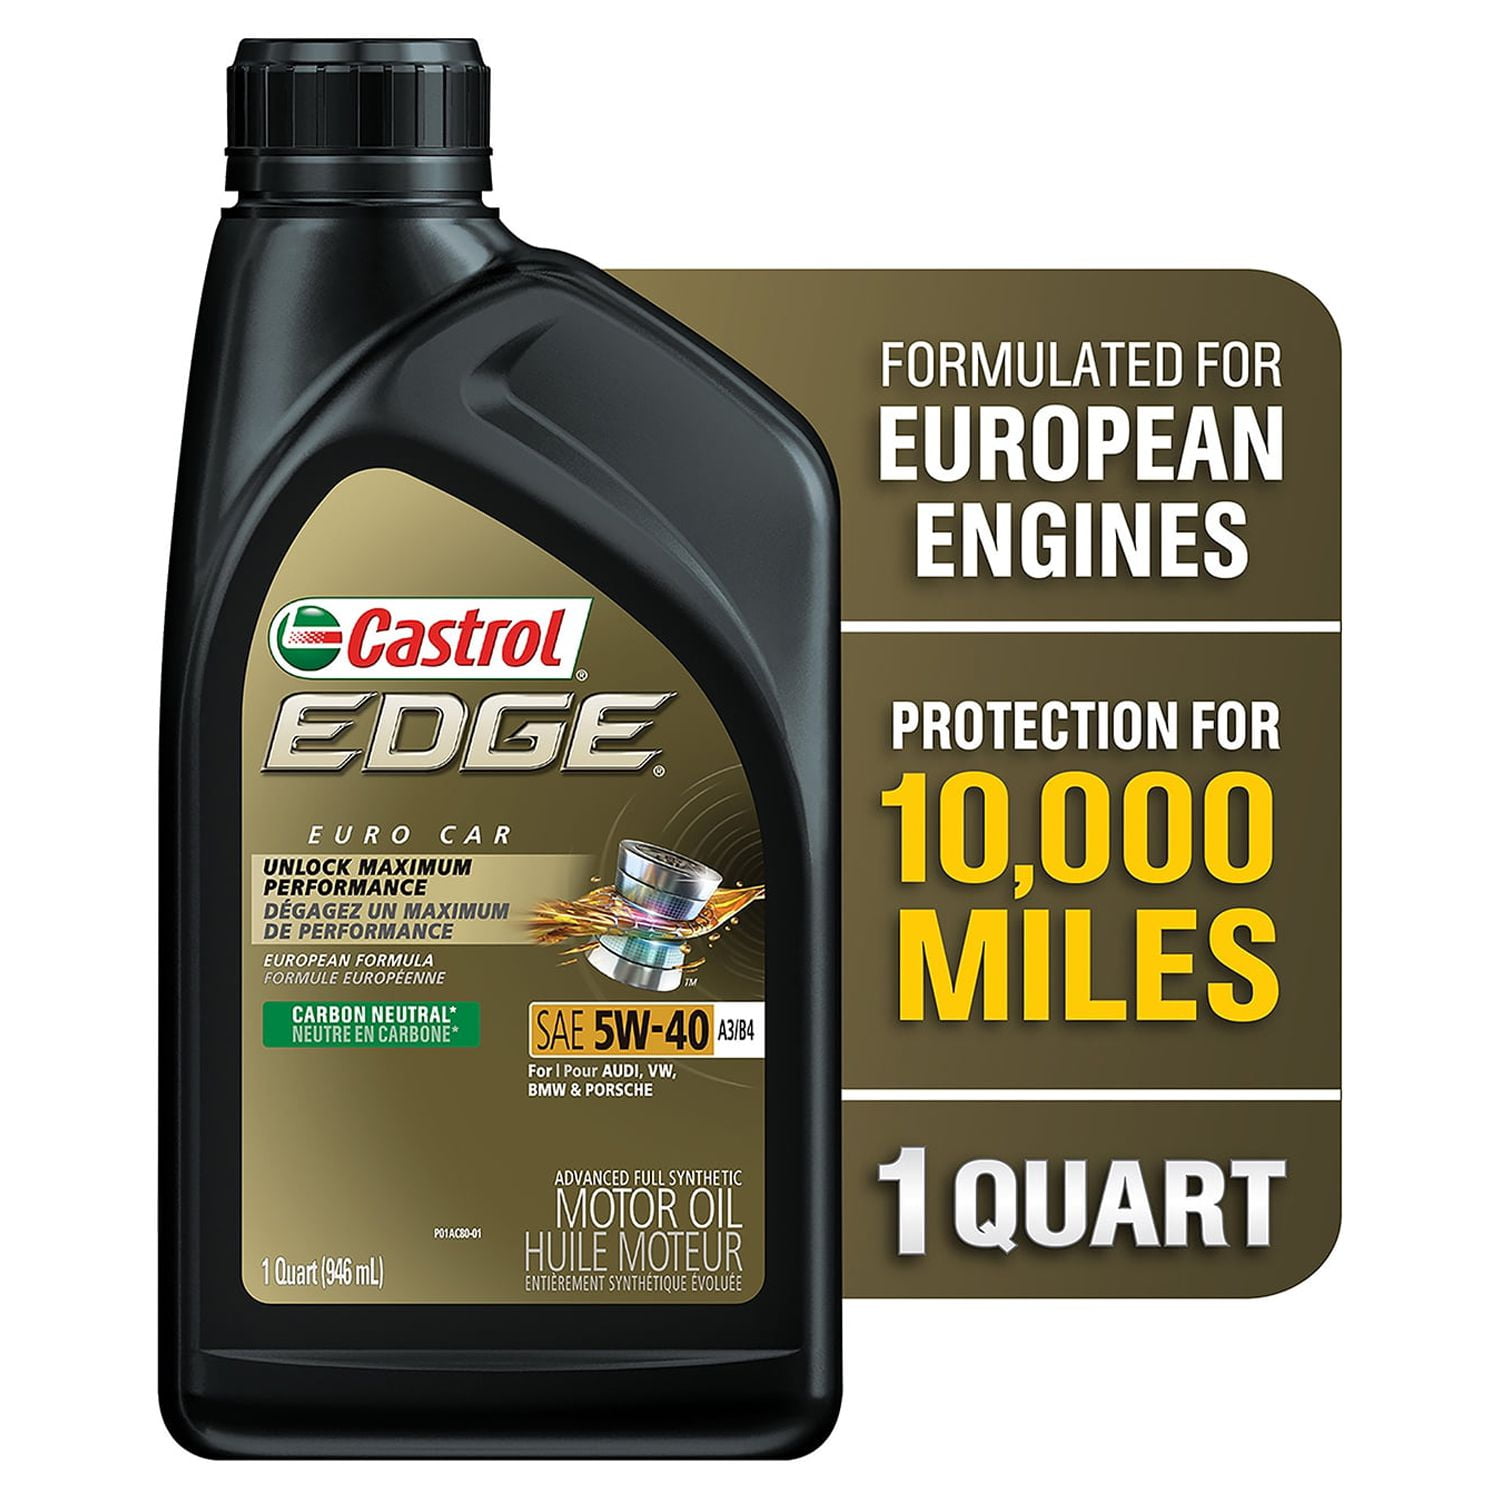 Castrol 5W-40 EDGE Turbo Diesel | 7 Litres | Buy online motor oil